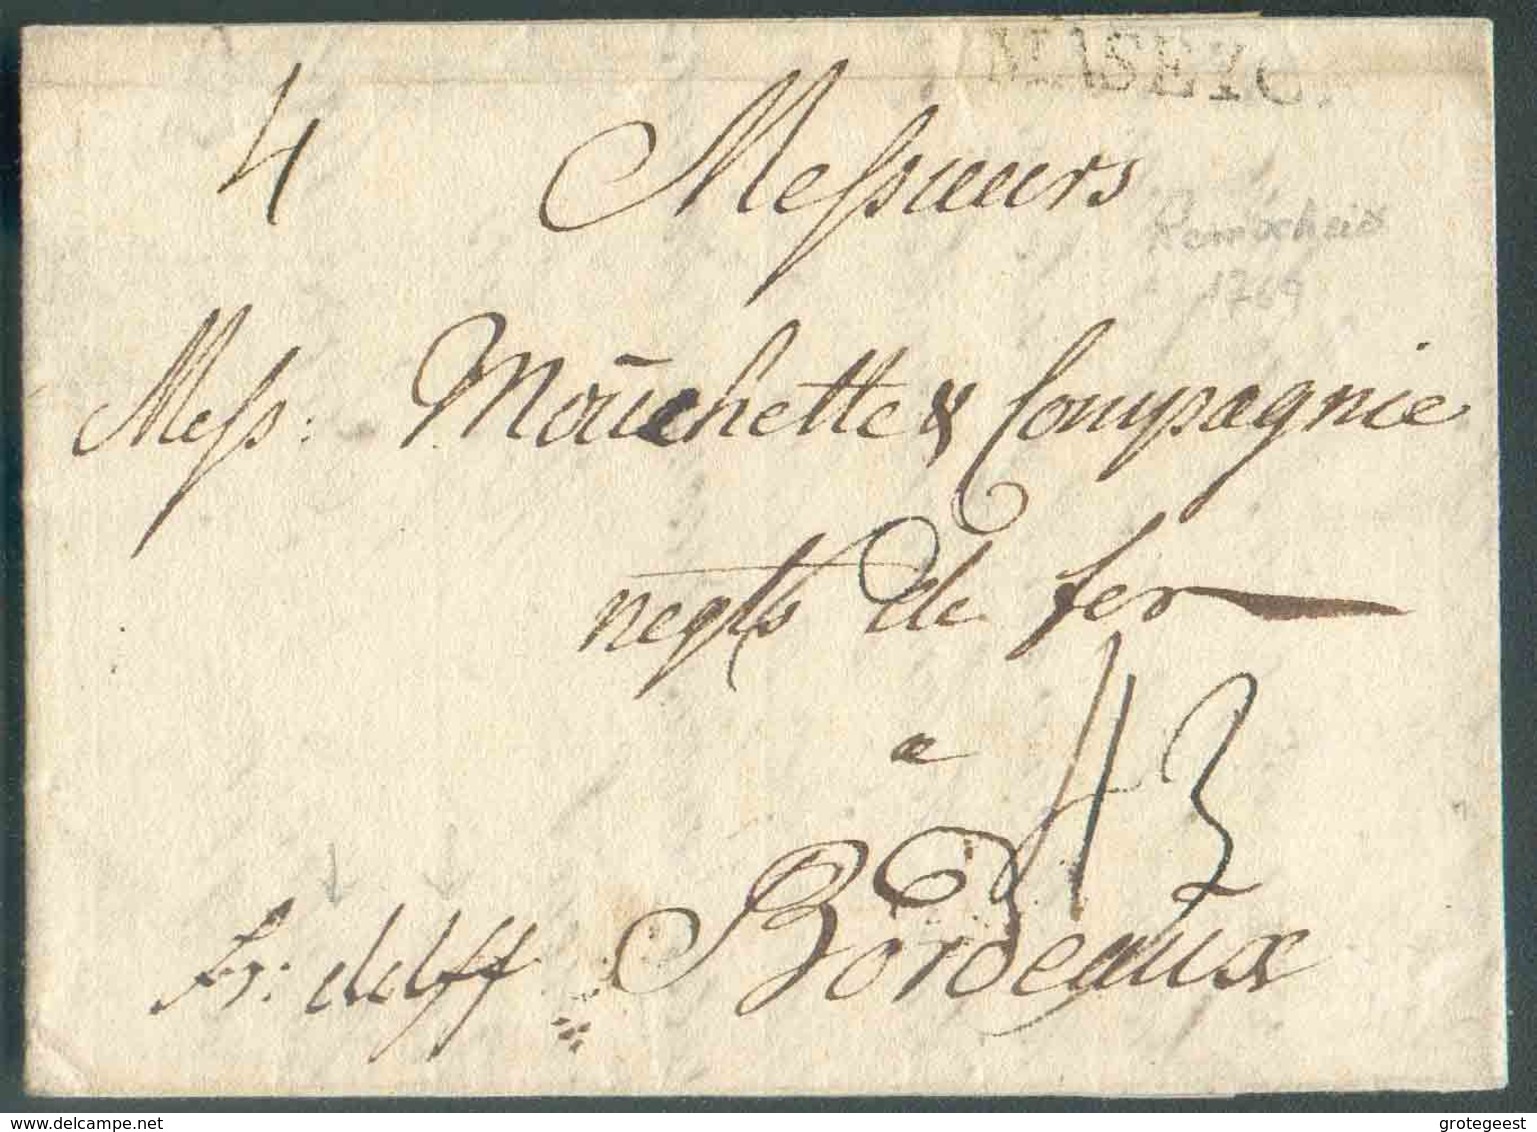 LAC Datée De REMSCHEID Le 16 Mars 1769 + Griffe MASEYCK Et Manuscrit 'fr.dslff' (franco Dusseldorff) Vers Bordeaux; Port - 1714-1794 (Paises Bajos Austriacos)